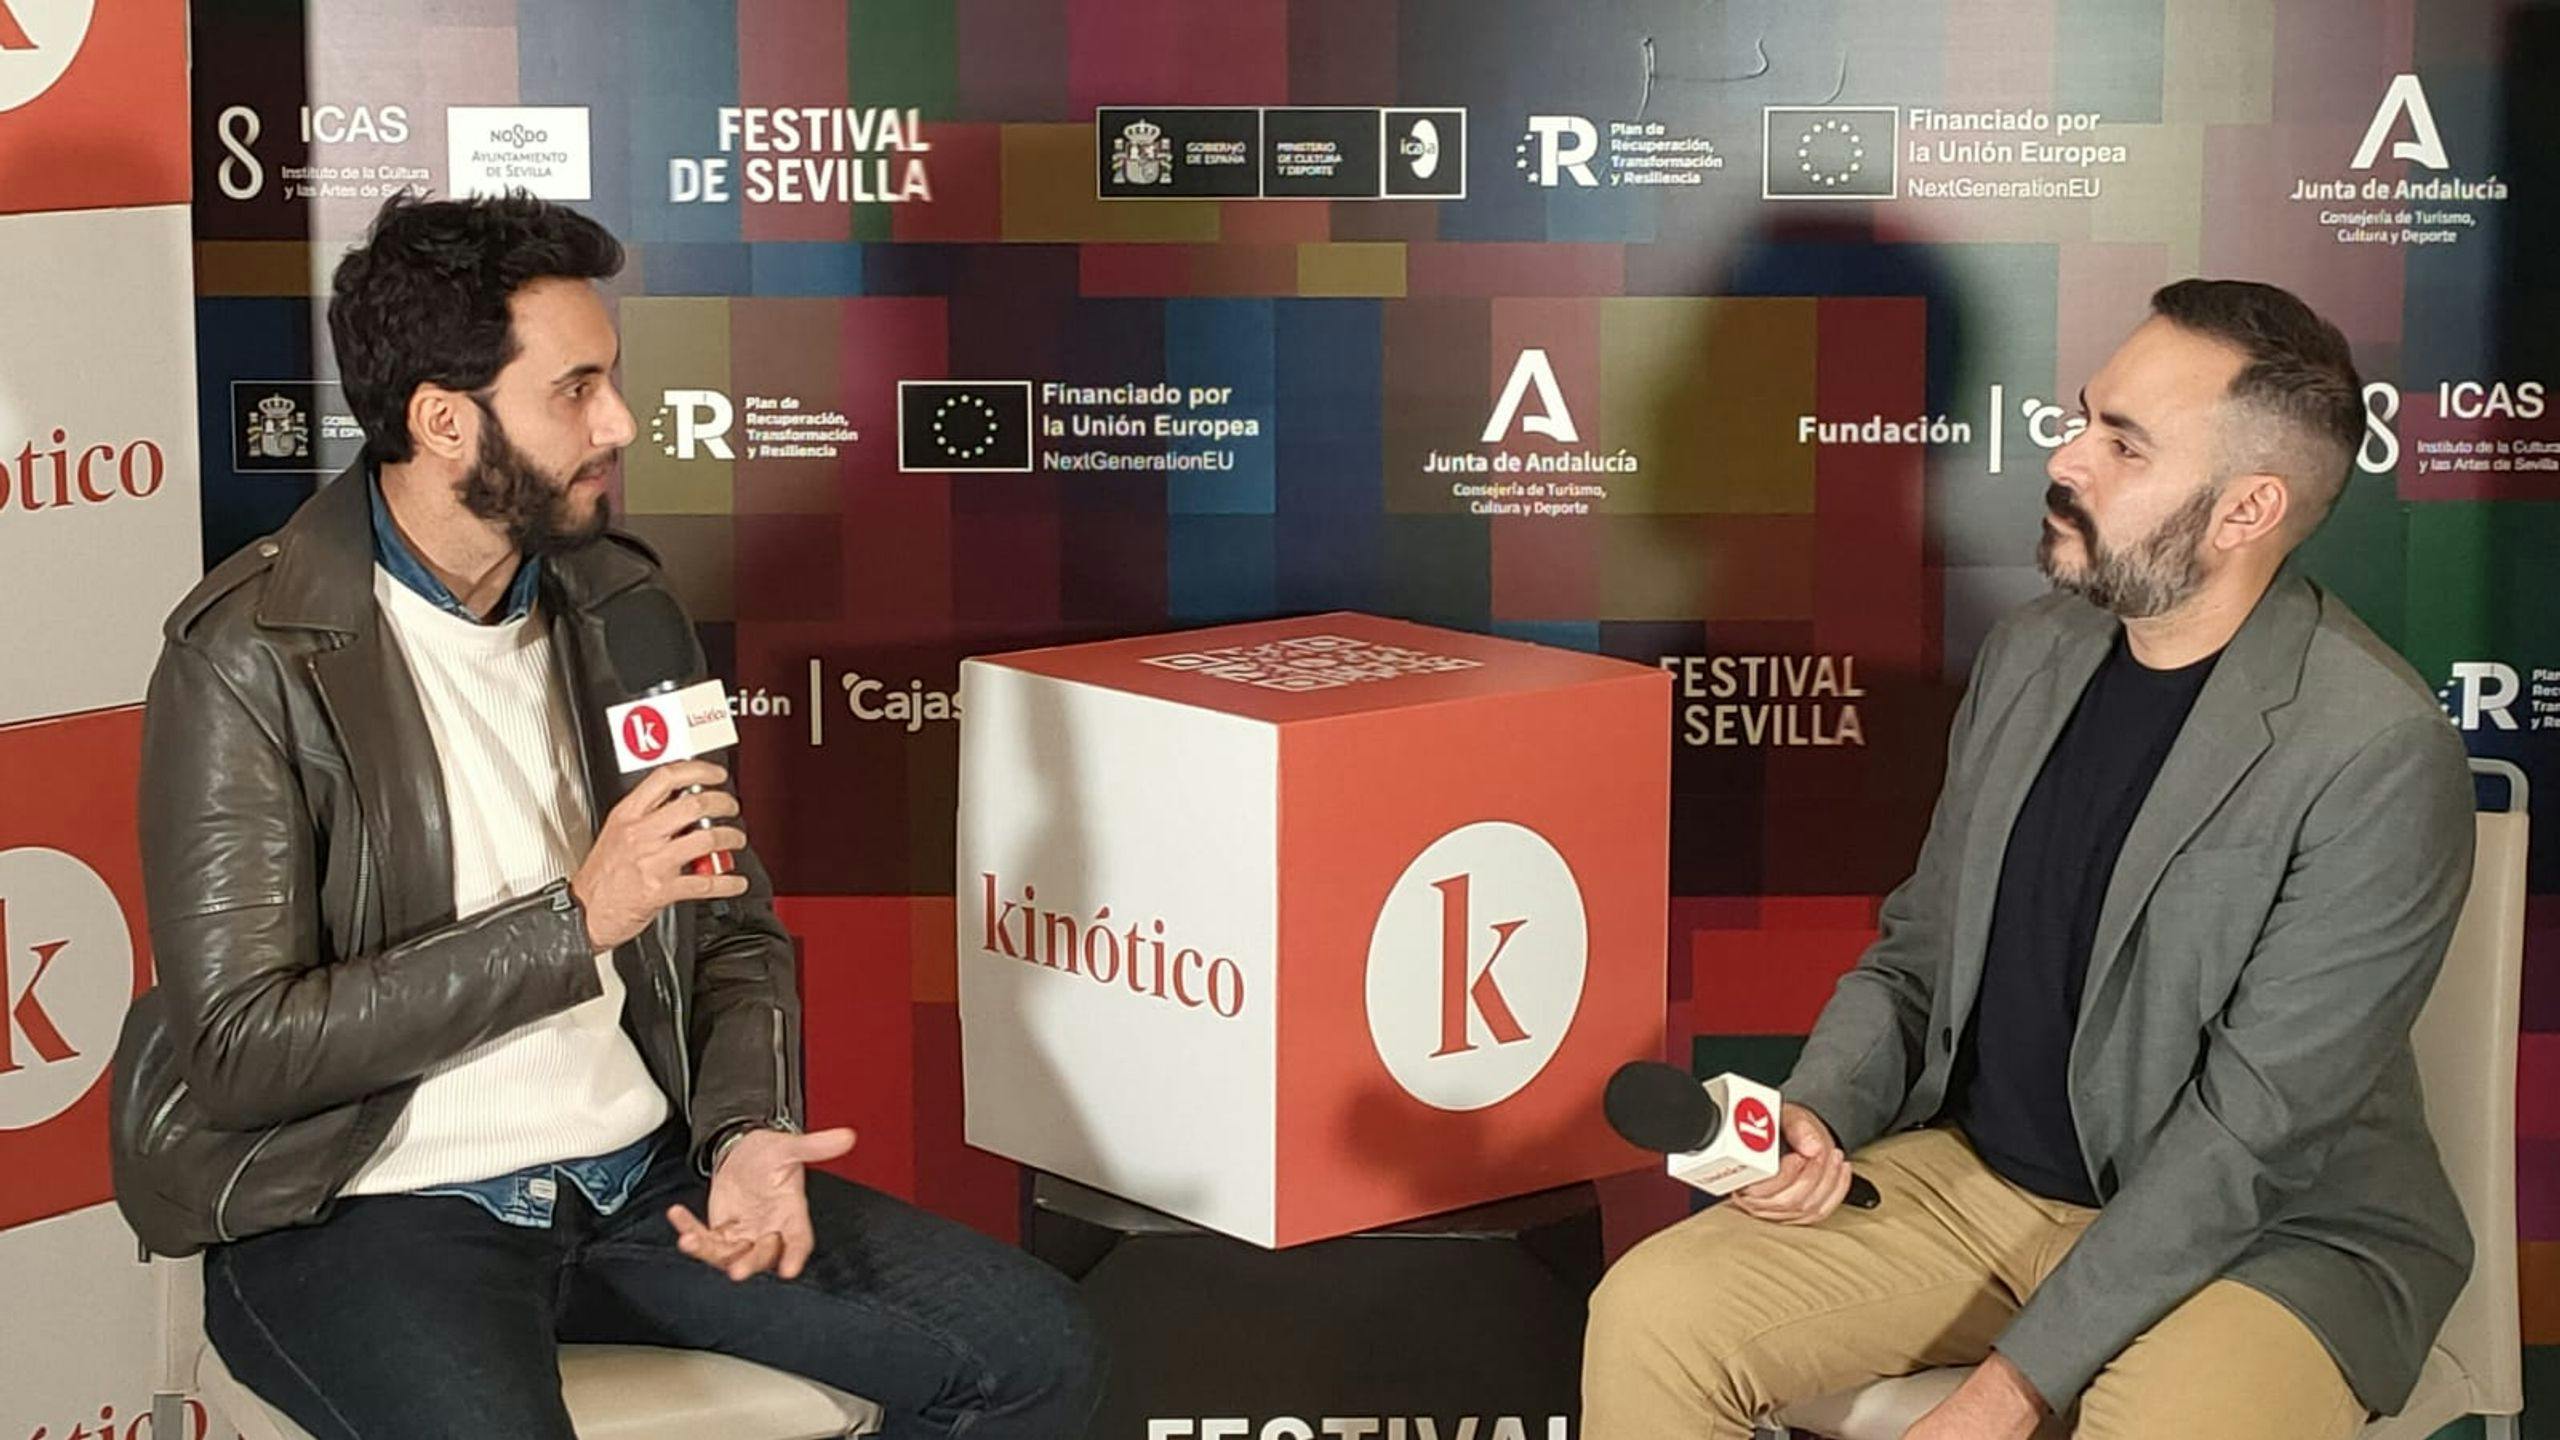 El director y guionista Fer Pérez conversa con David Martos en el Festival de Sevilla